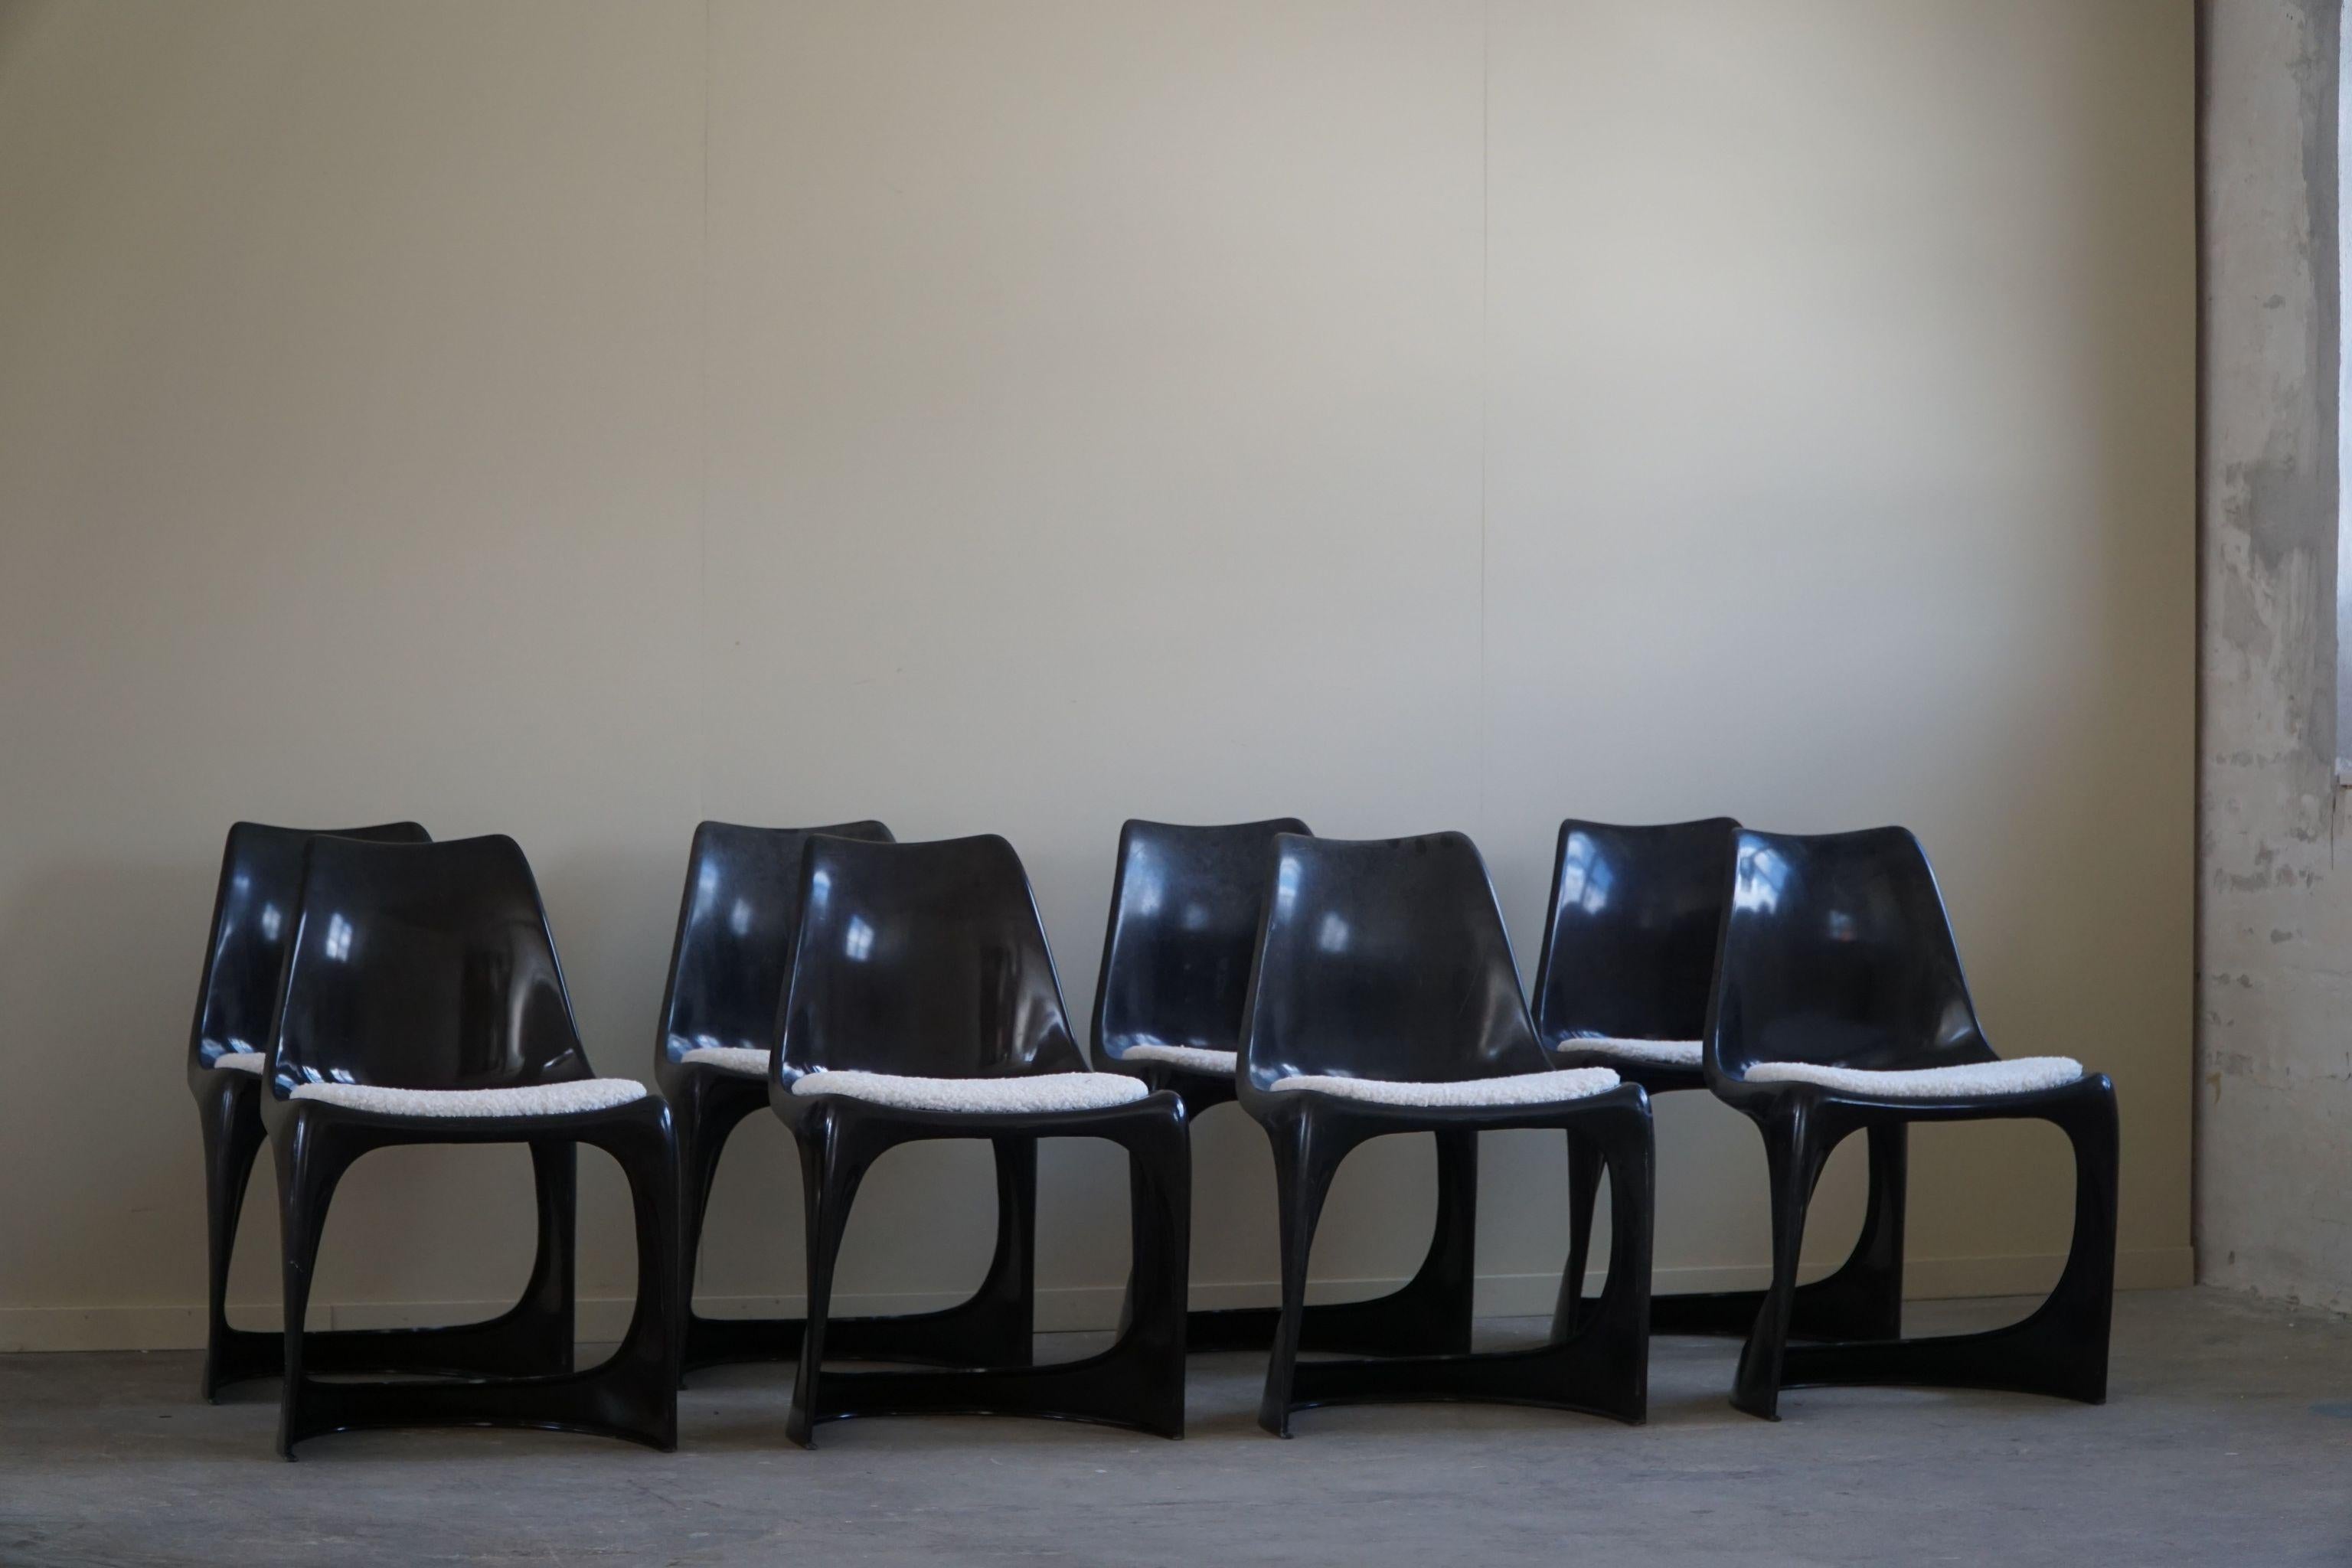 Cet ensemble de 8 chaises de salle à manger, conçu à l'origine par Steens Østergaard en 1966, est un exemple étonnant du design danois du milieu du siècle dernier. Les chaises présentent un design épuré et minimaliste, avec des lignes nettes et une